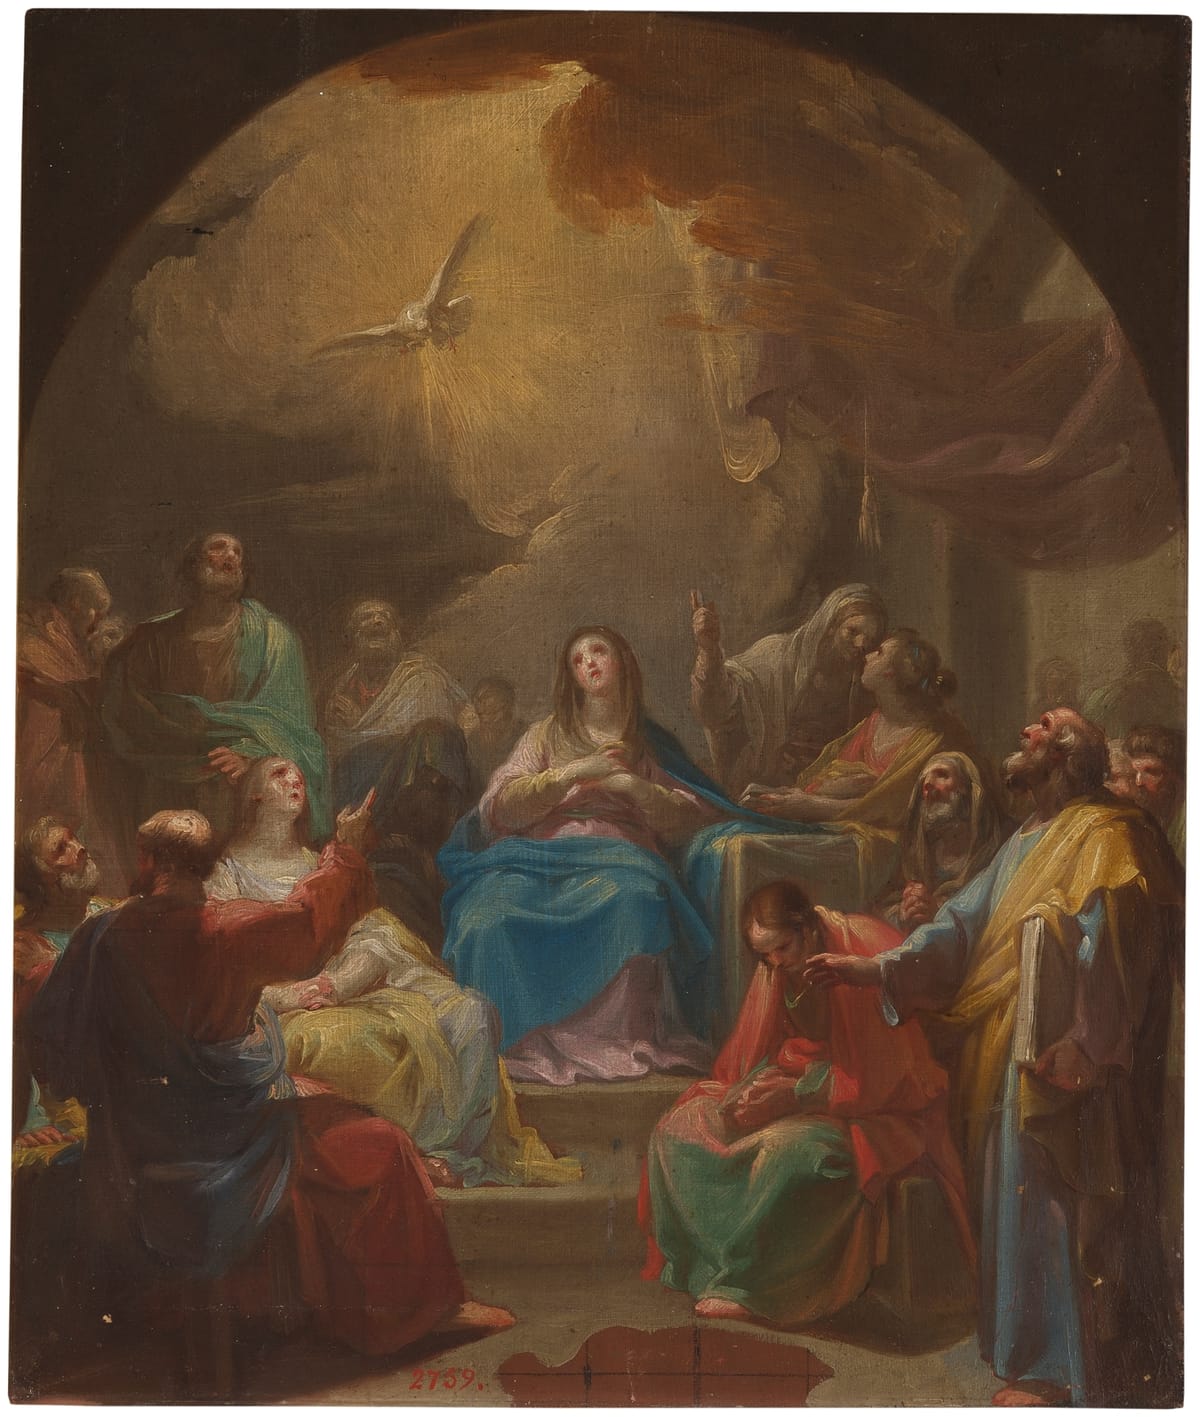 Pentecost (1769) by Francisco Bayeu - Public Domain Catholic Painting